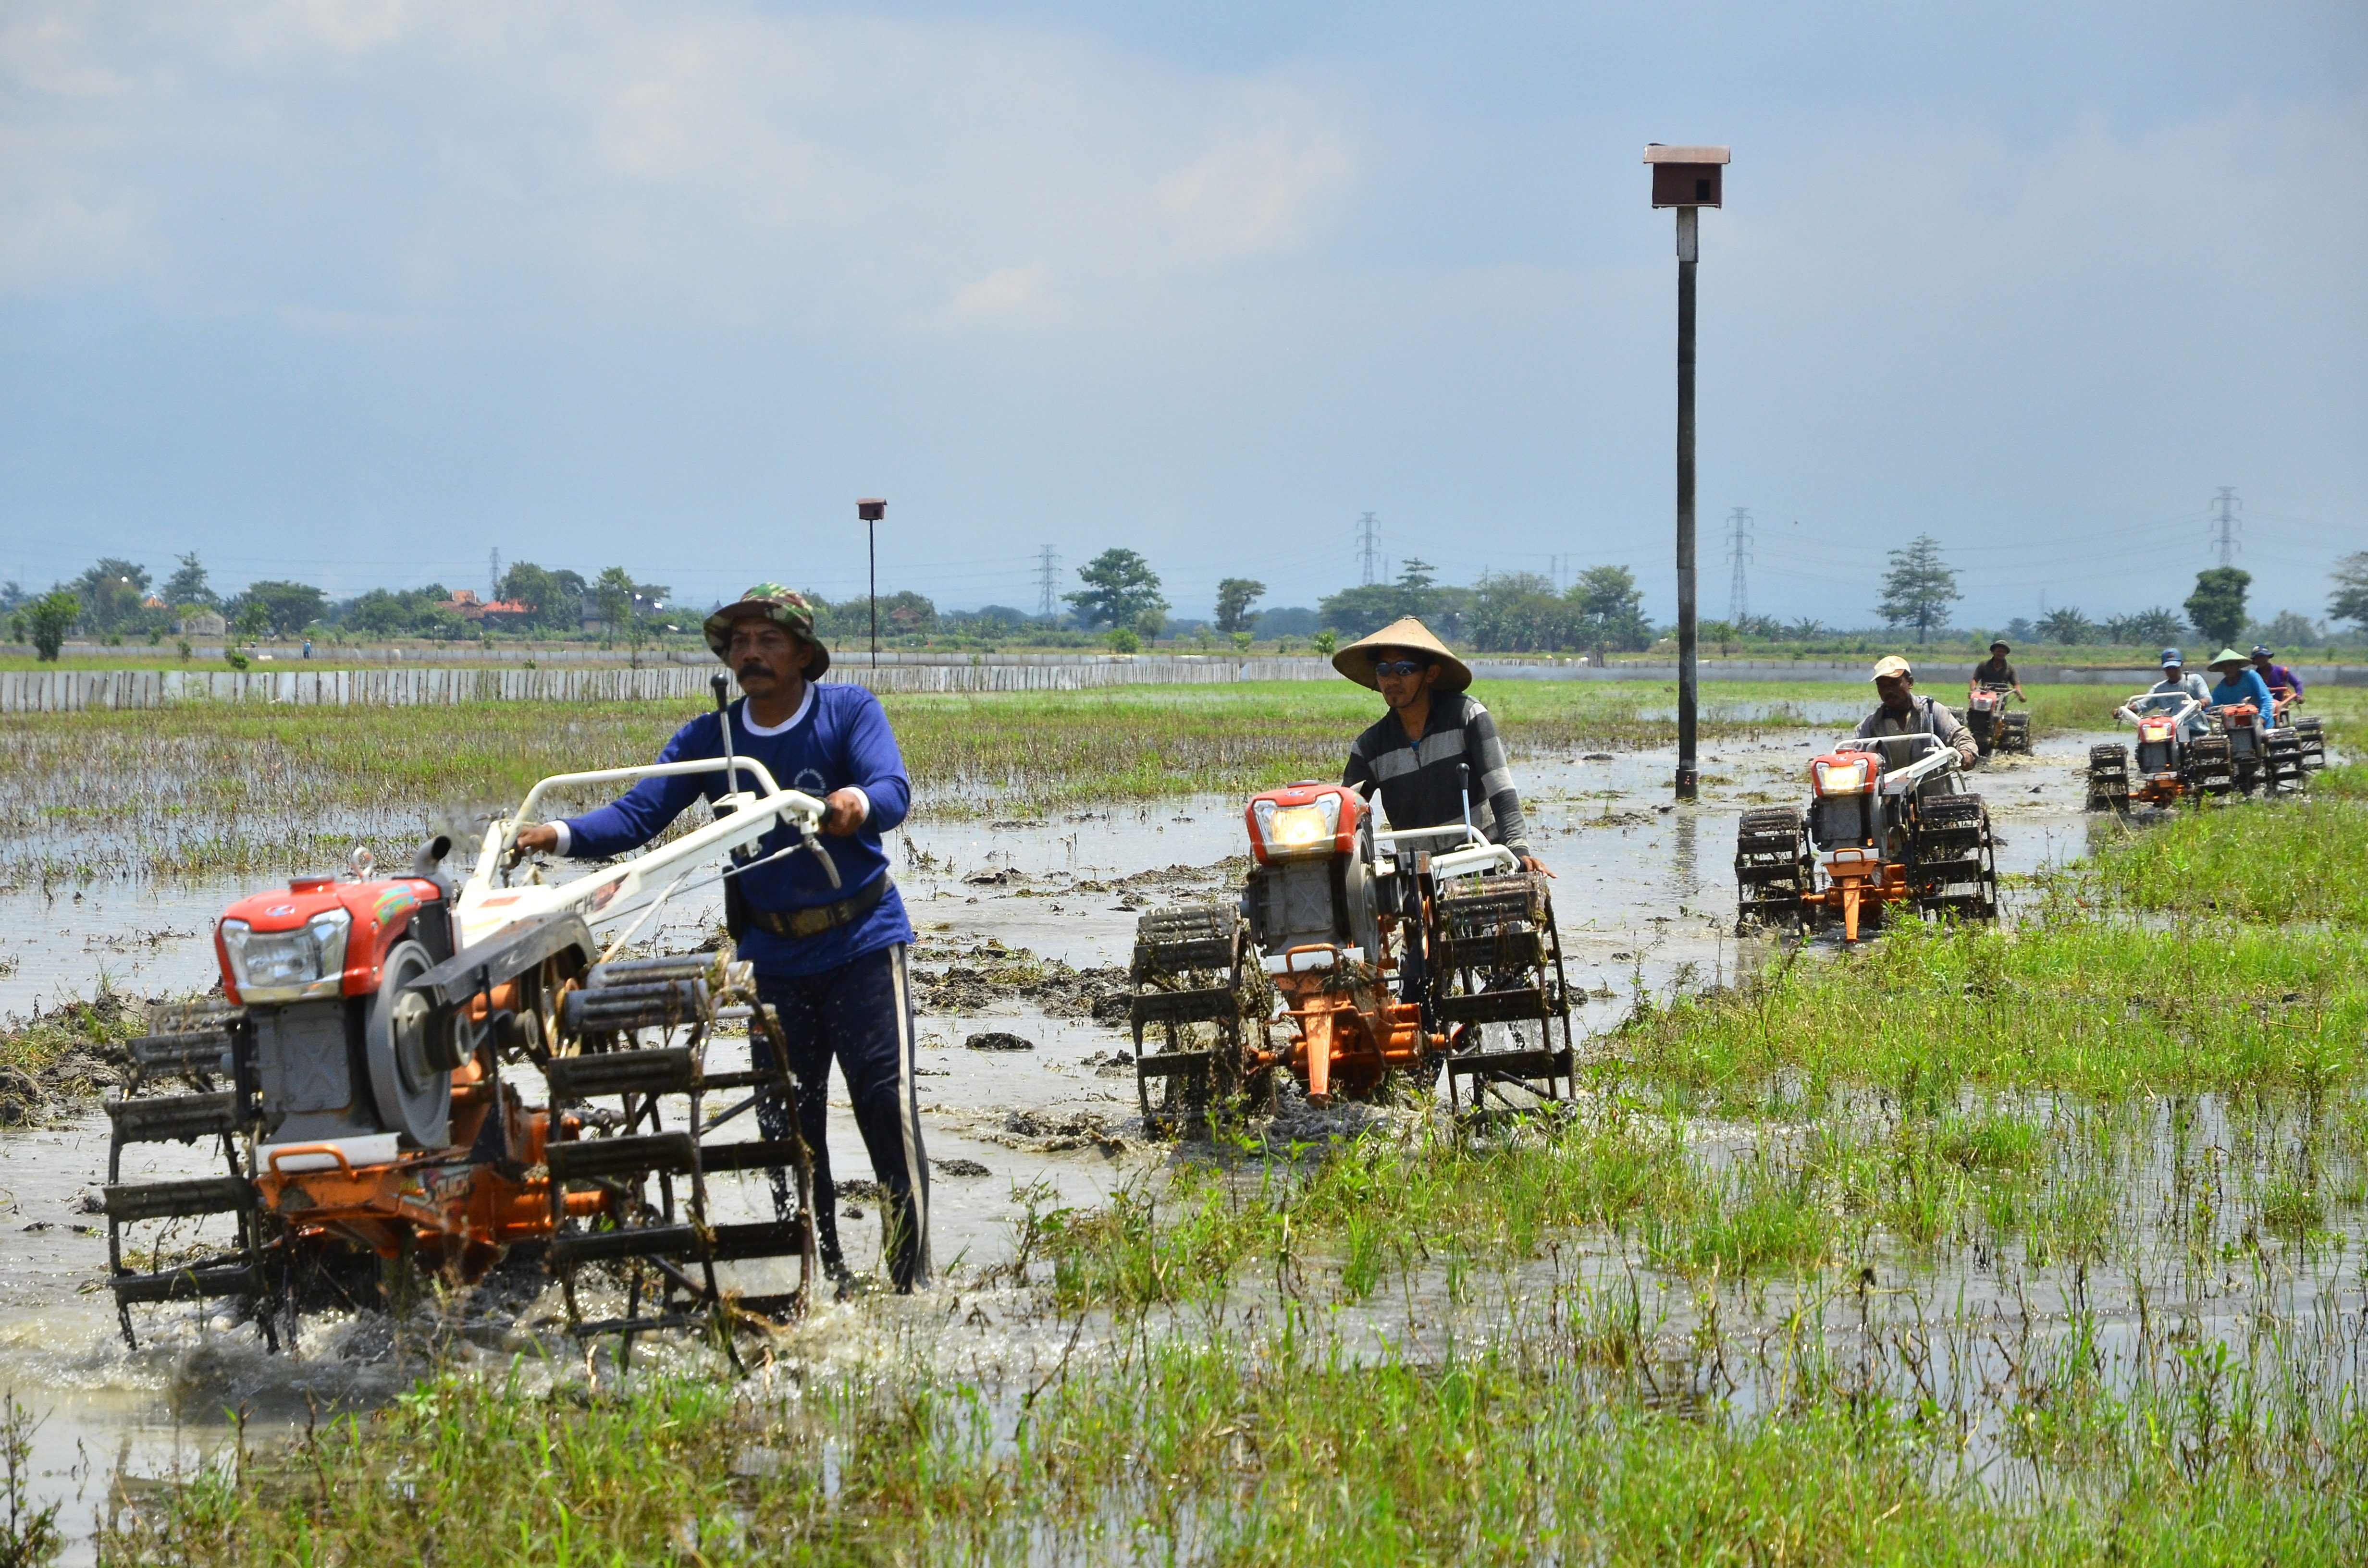 Petani mengolah tanah menggunakan traktor di persawahan Desa Undaan, Kudus, Jawa Tengah, pada 18 Oktober 2016. Foto oleh Yusuf Nugroho/Antara 